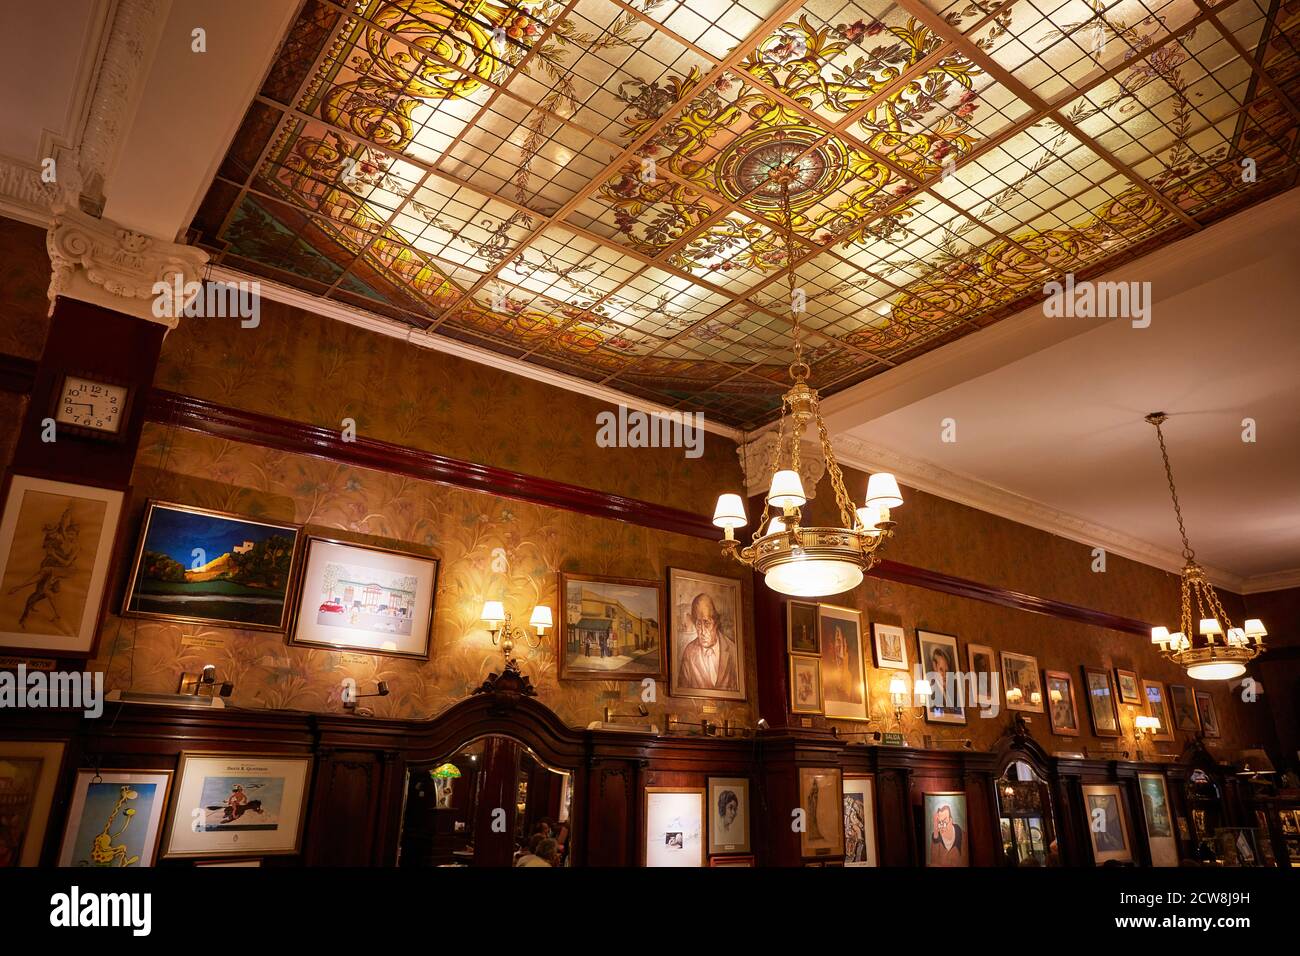 Les intérieurs de l'historique 'Cafè Tortoni' sur l'Avenida de Mayo, Buenos Aires, Argentine. Banque D'Images